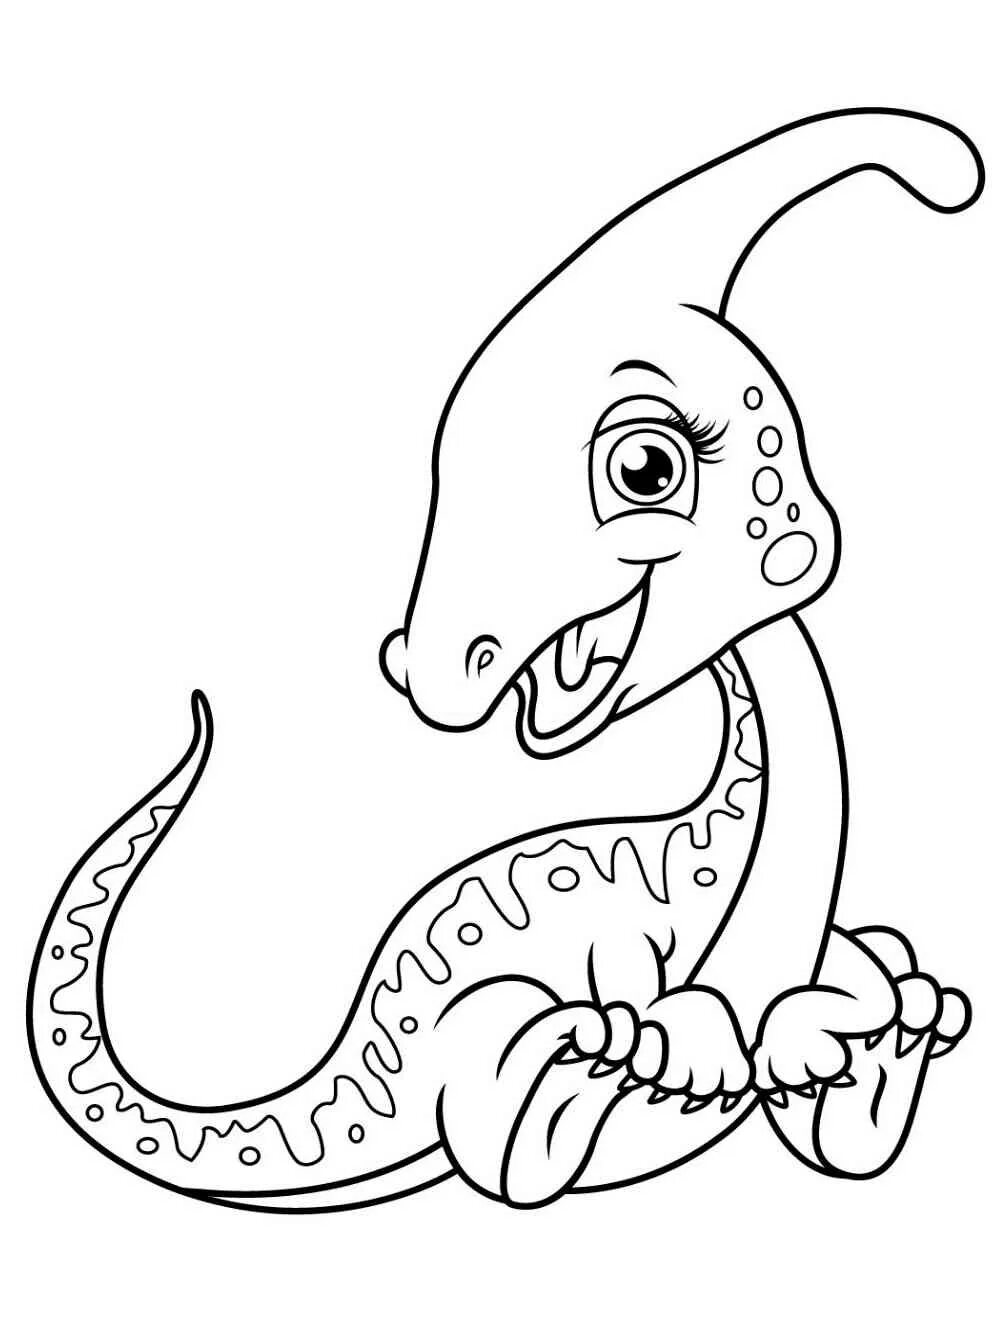 Раскраска динозавр формат а4. Динозавры / раскраска. Динозавр раскраска для детей. Динозавры для раскрашивания детям. Динозаврики раскраска для детей.